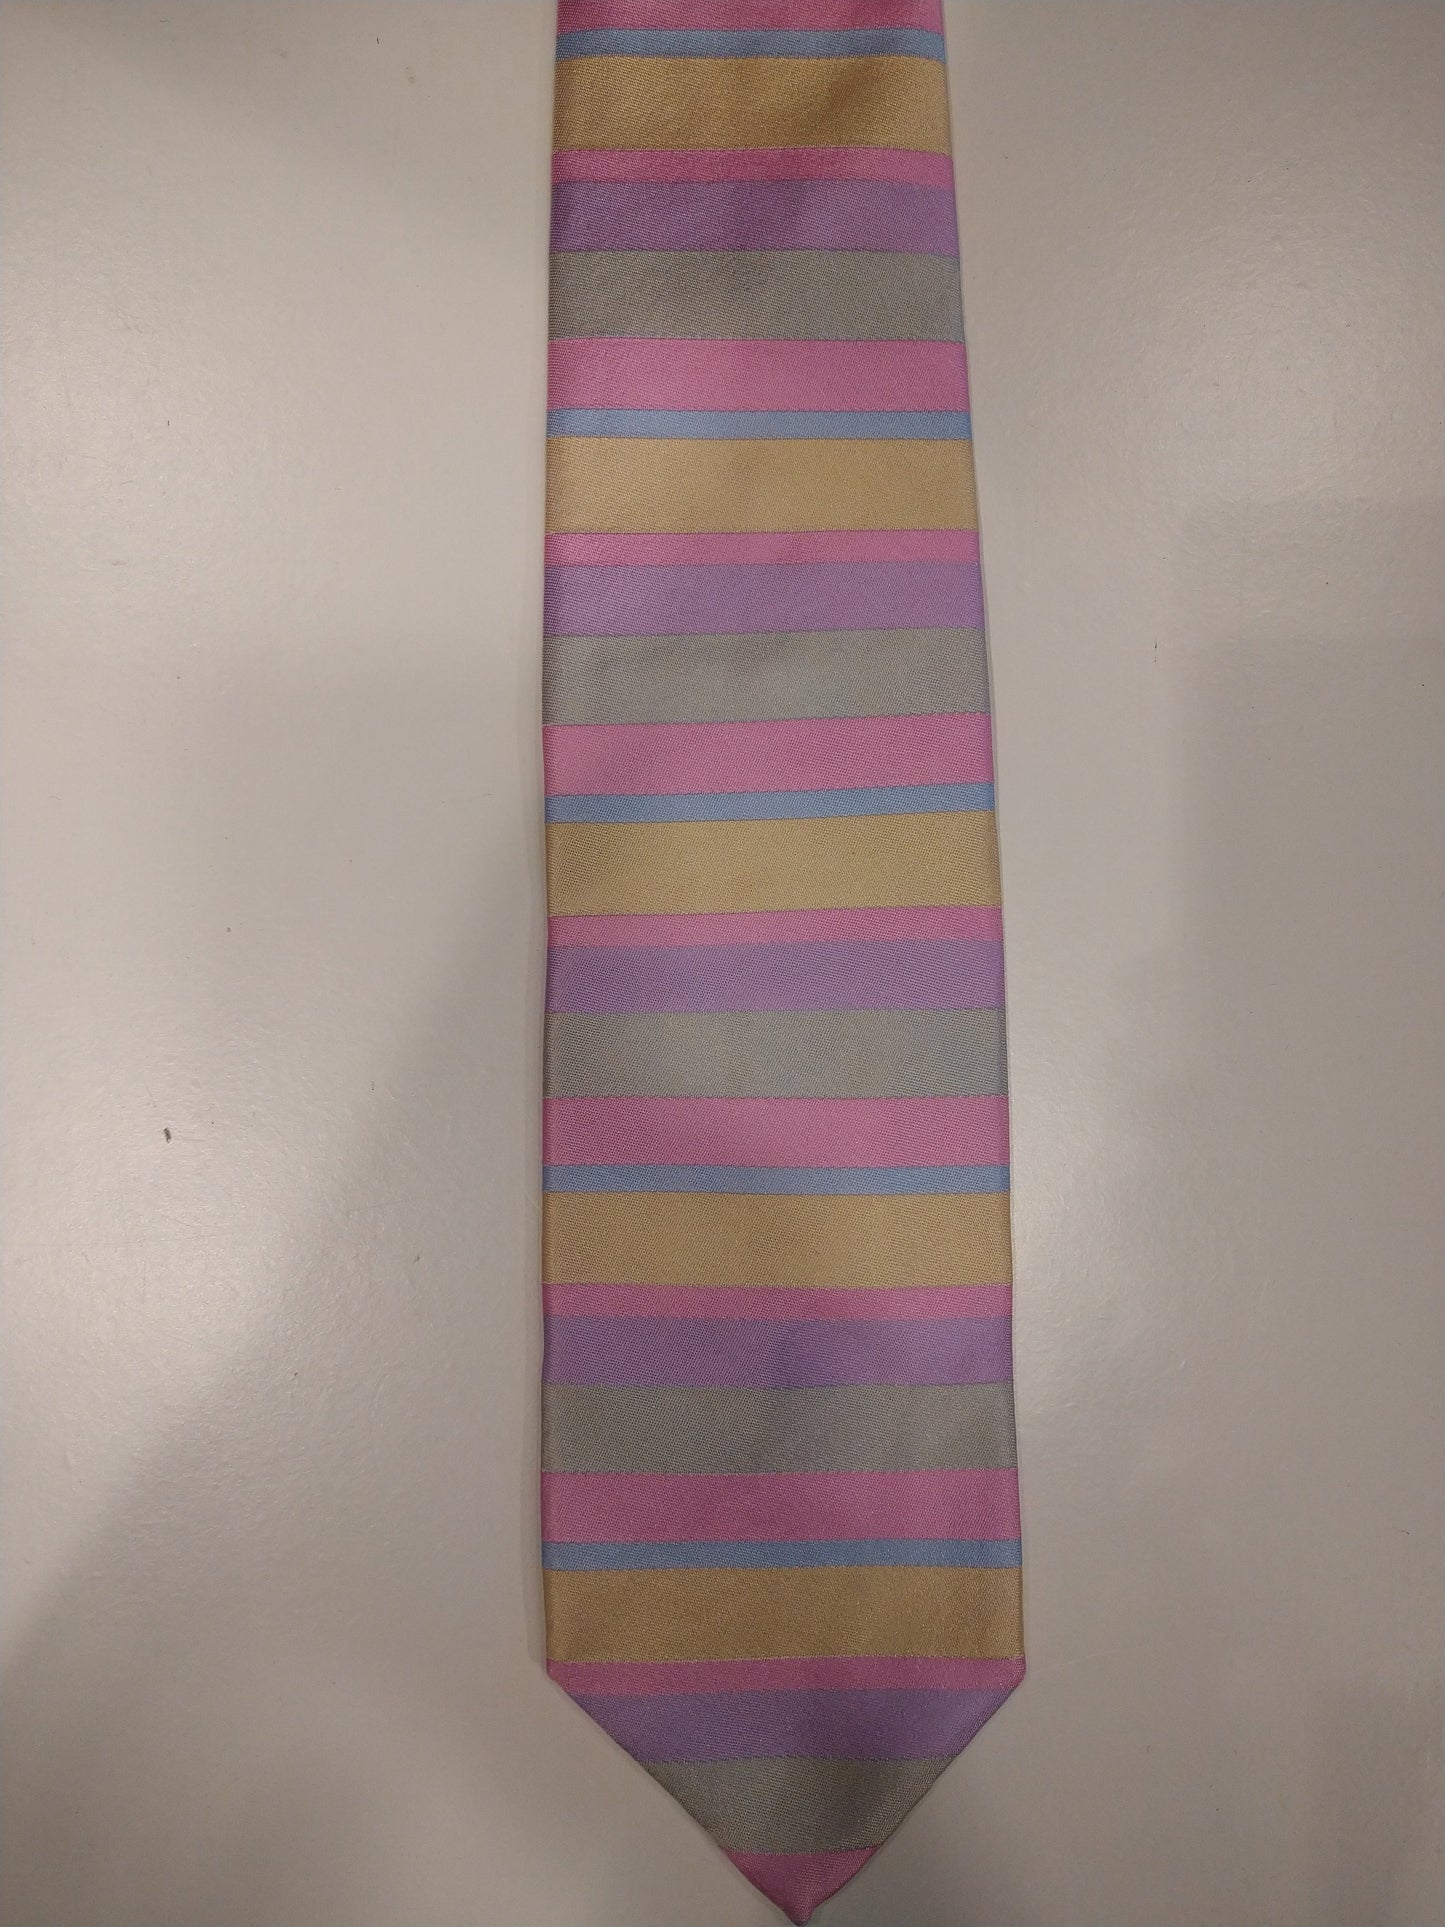 Jay Pee's hand made in Como zijde stropdas. Roze / paars / blauw / geel gestreept.